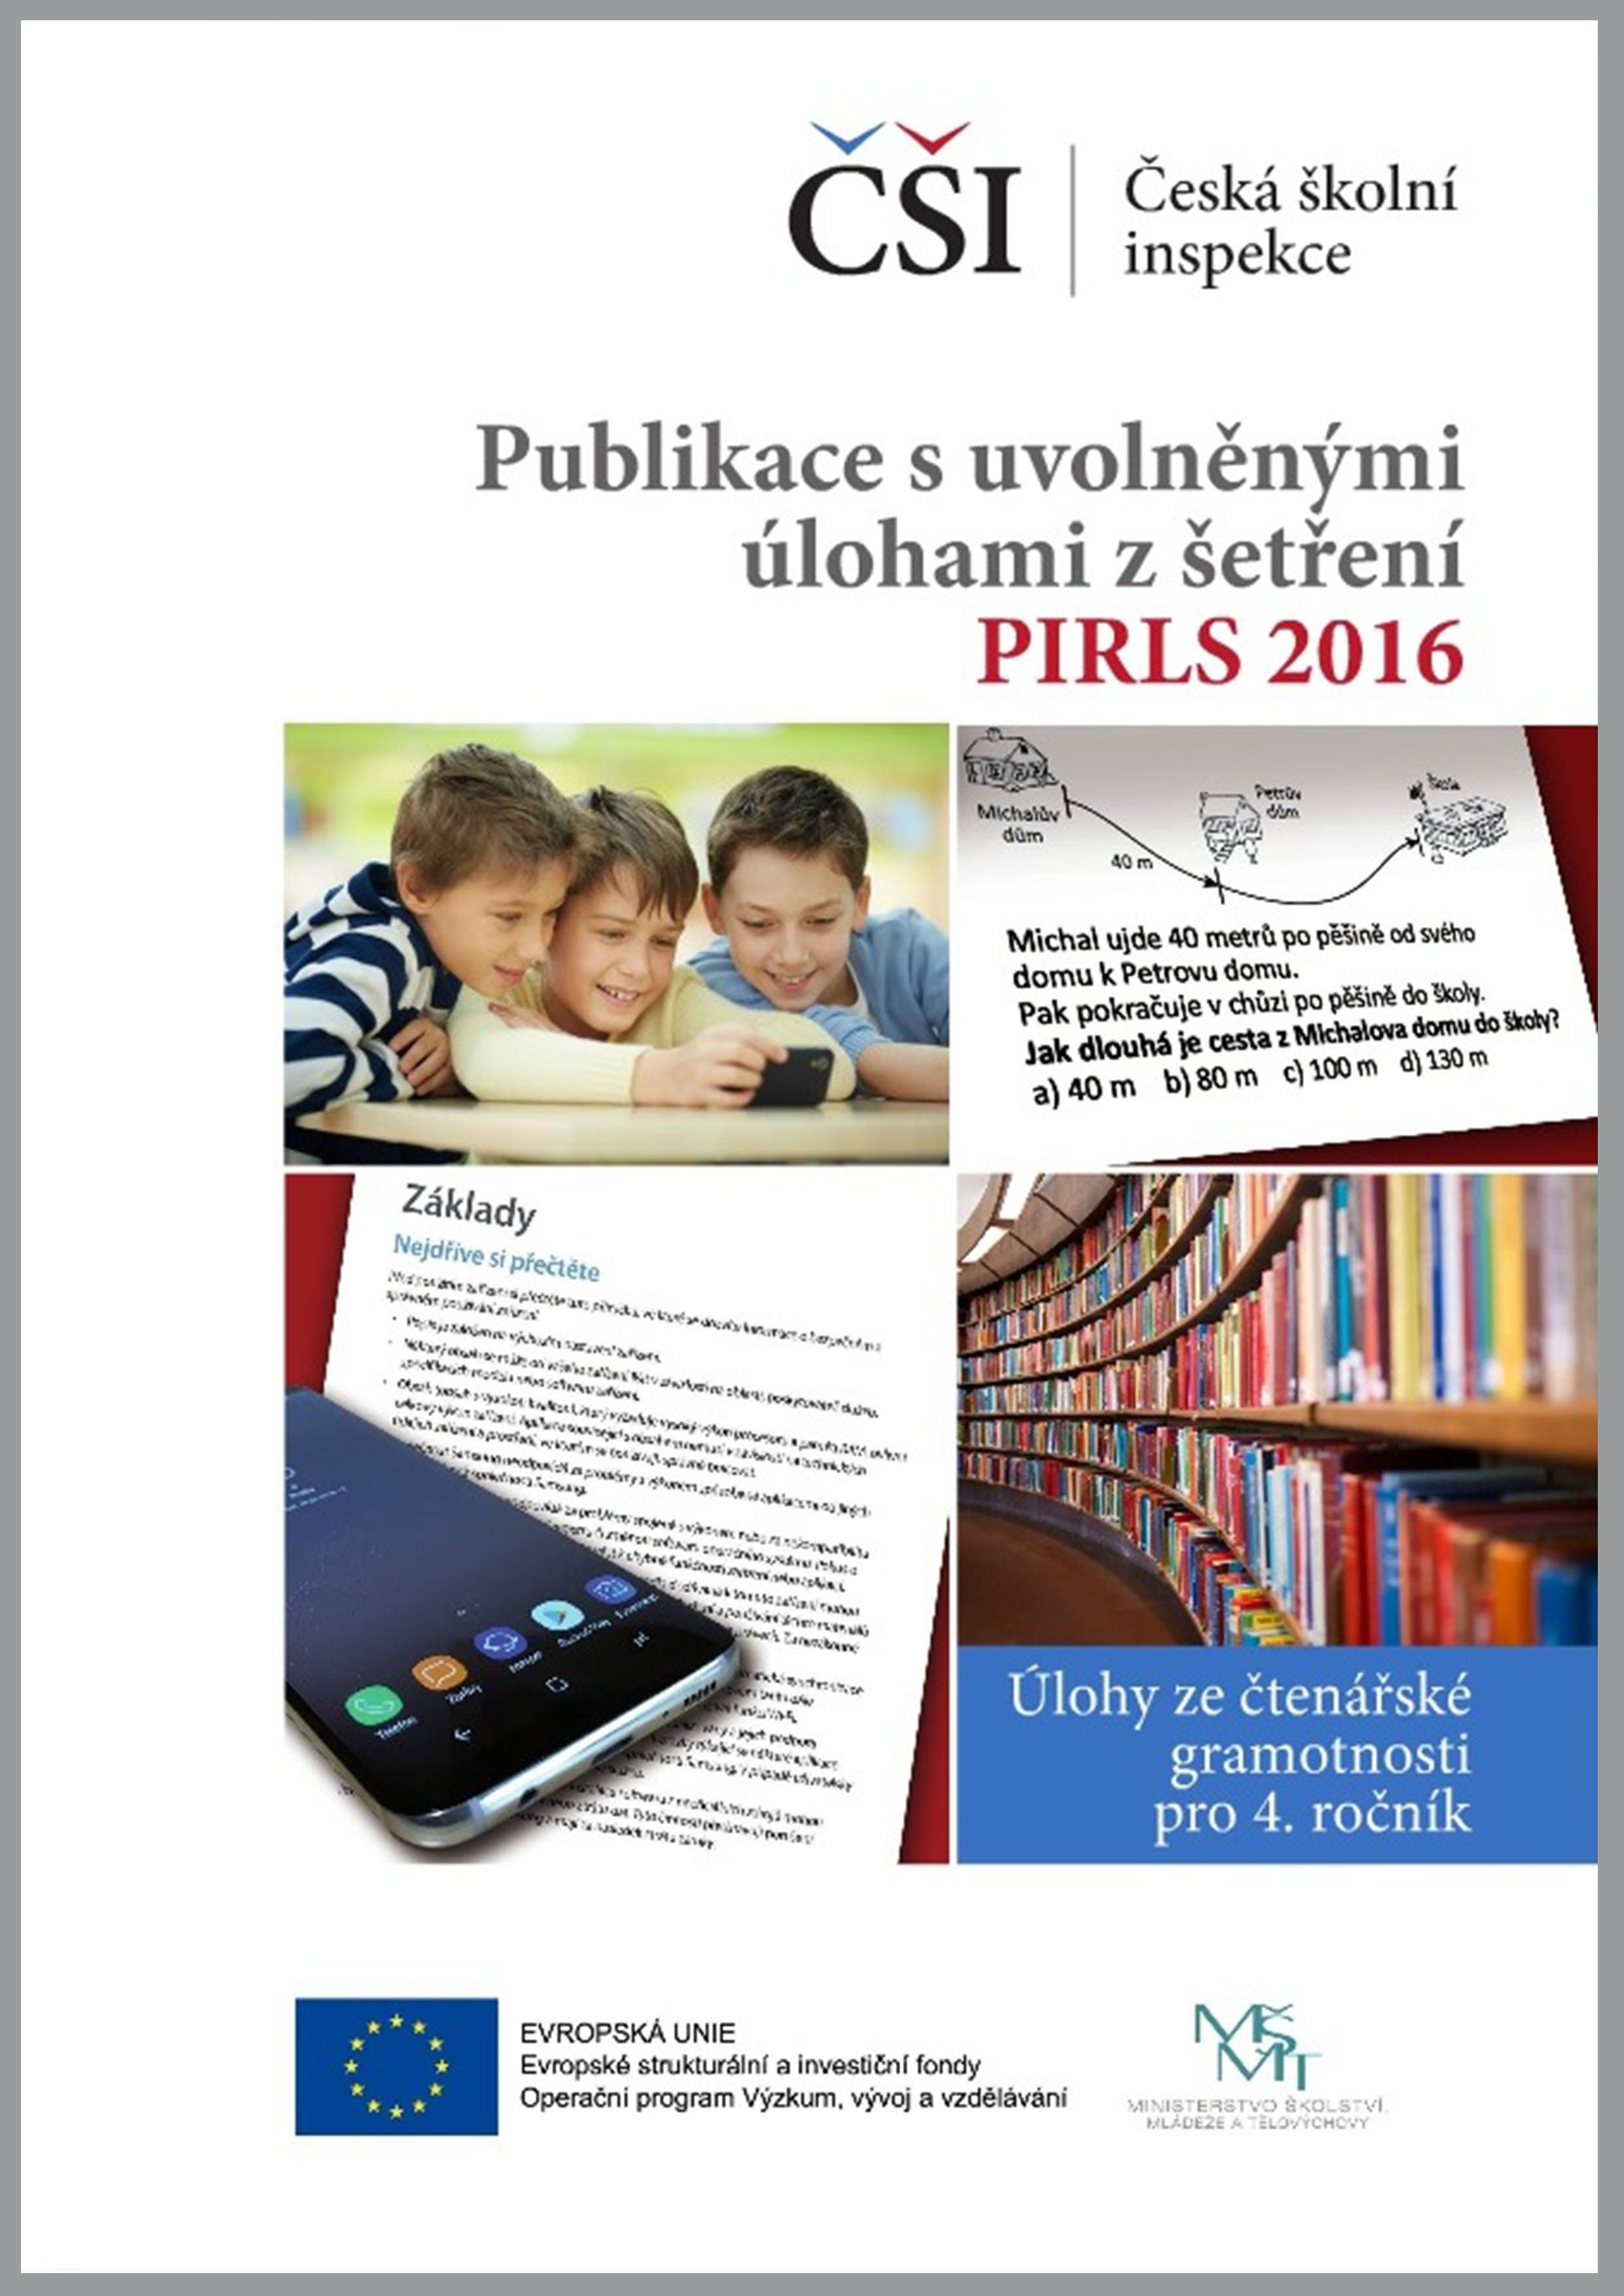 PIRLS 2016 - publikace s uvolněnými úlohami ze čtenářské gramotnosti